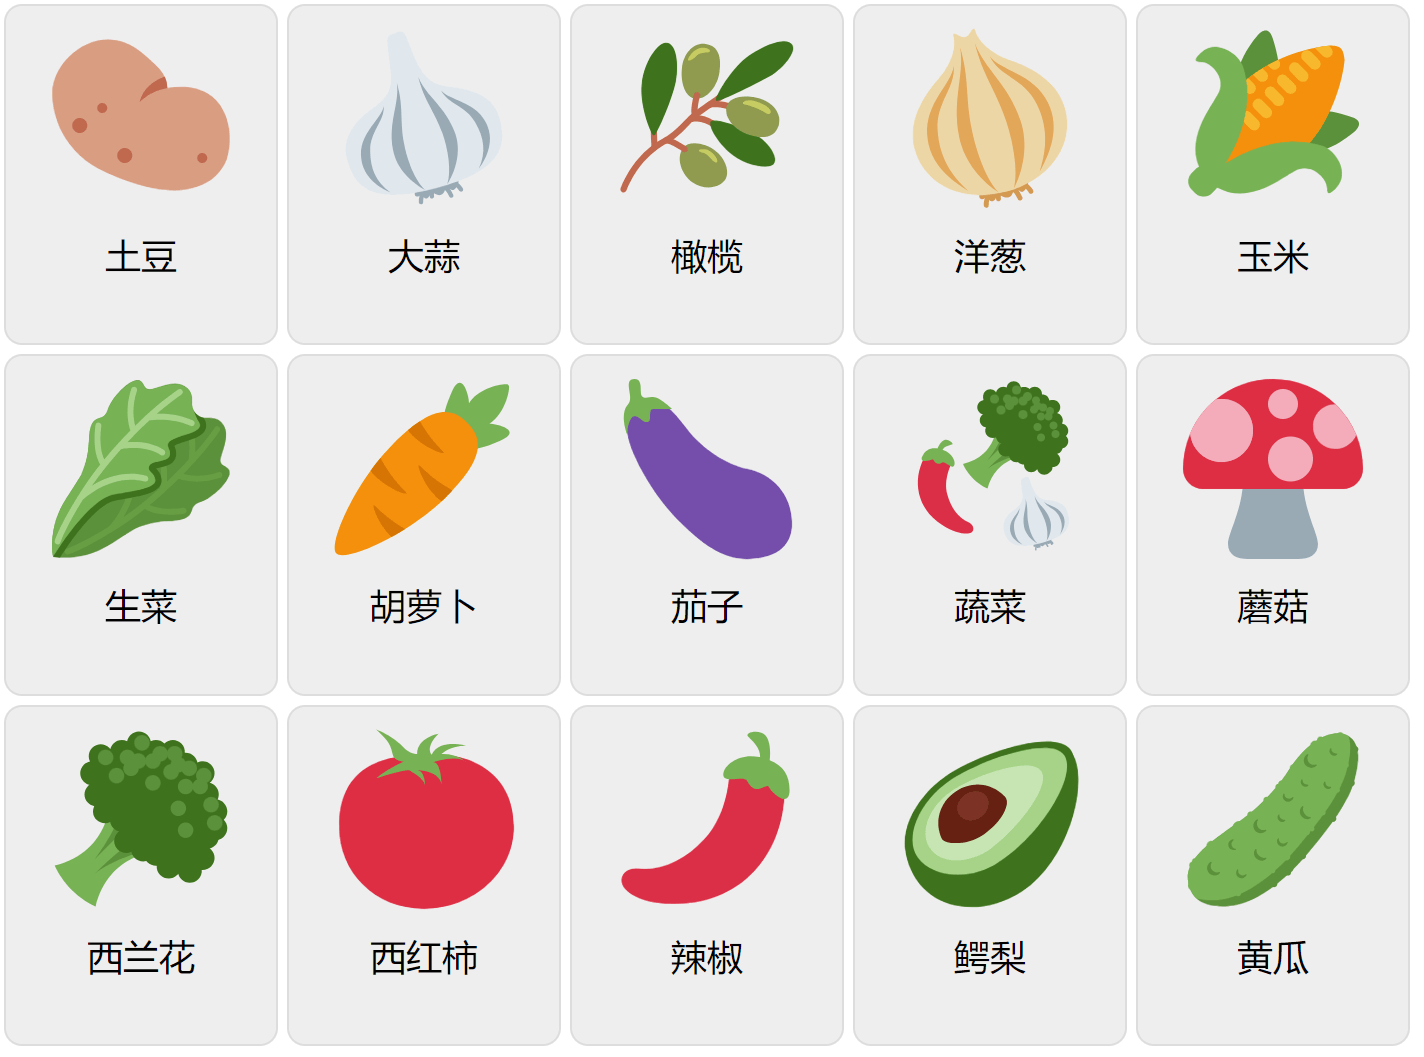 Grönsaker på kinesiska